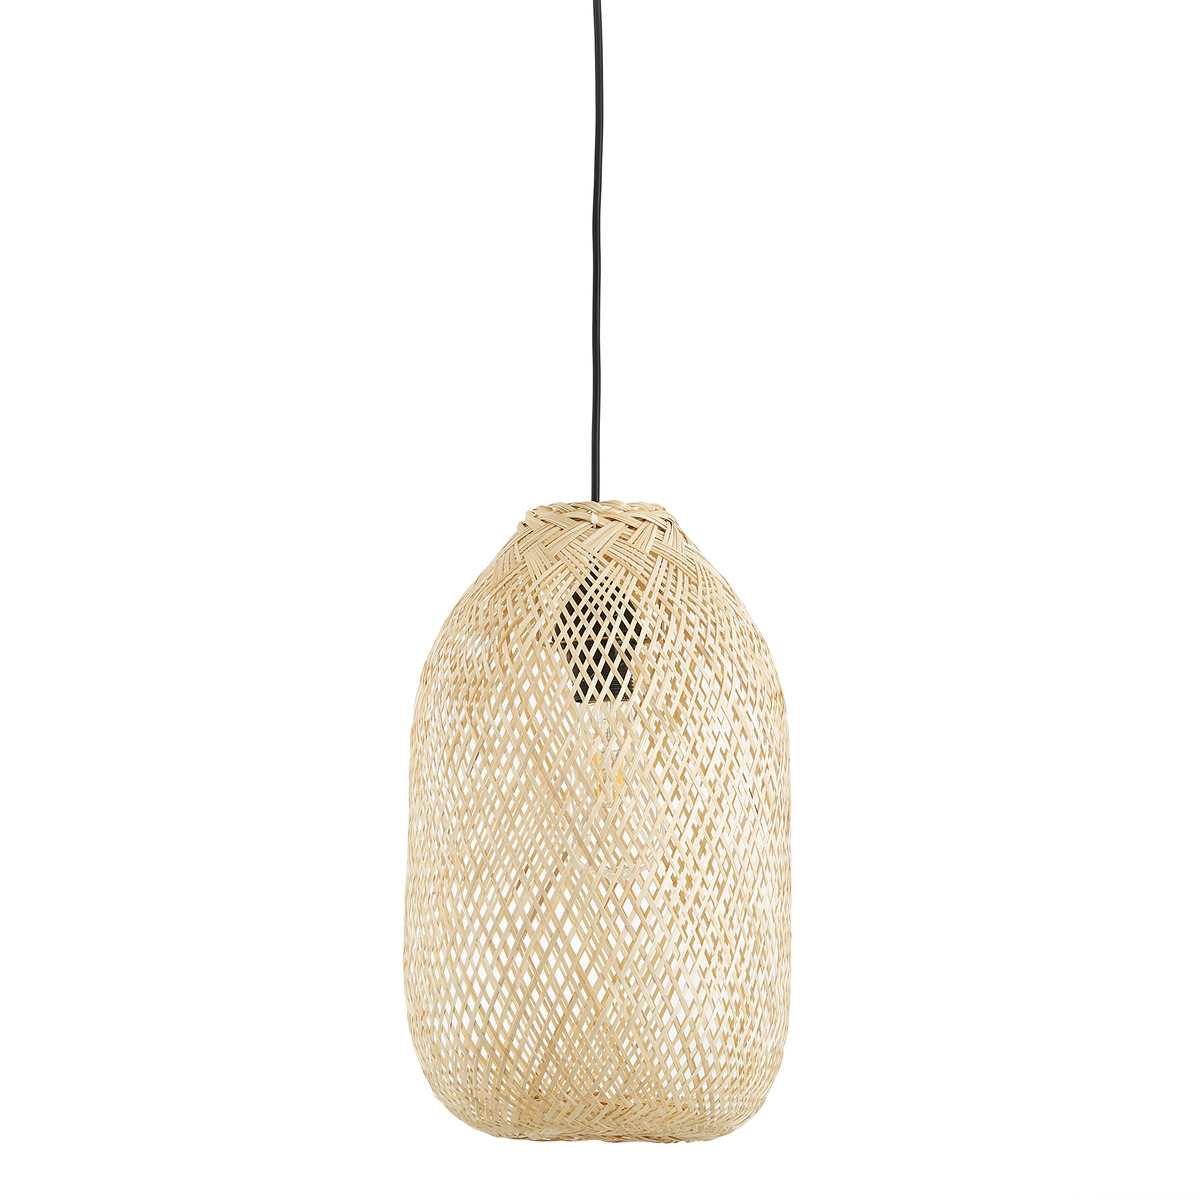 Ezia 25cm Diameter Bamboo Ceiling Light - image 1